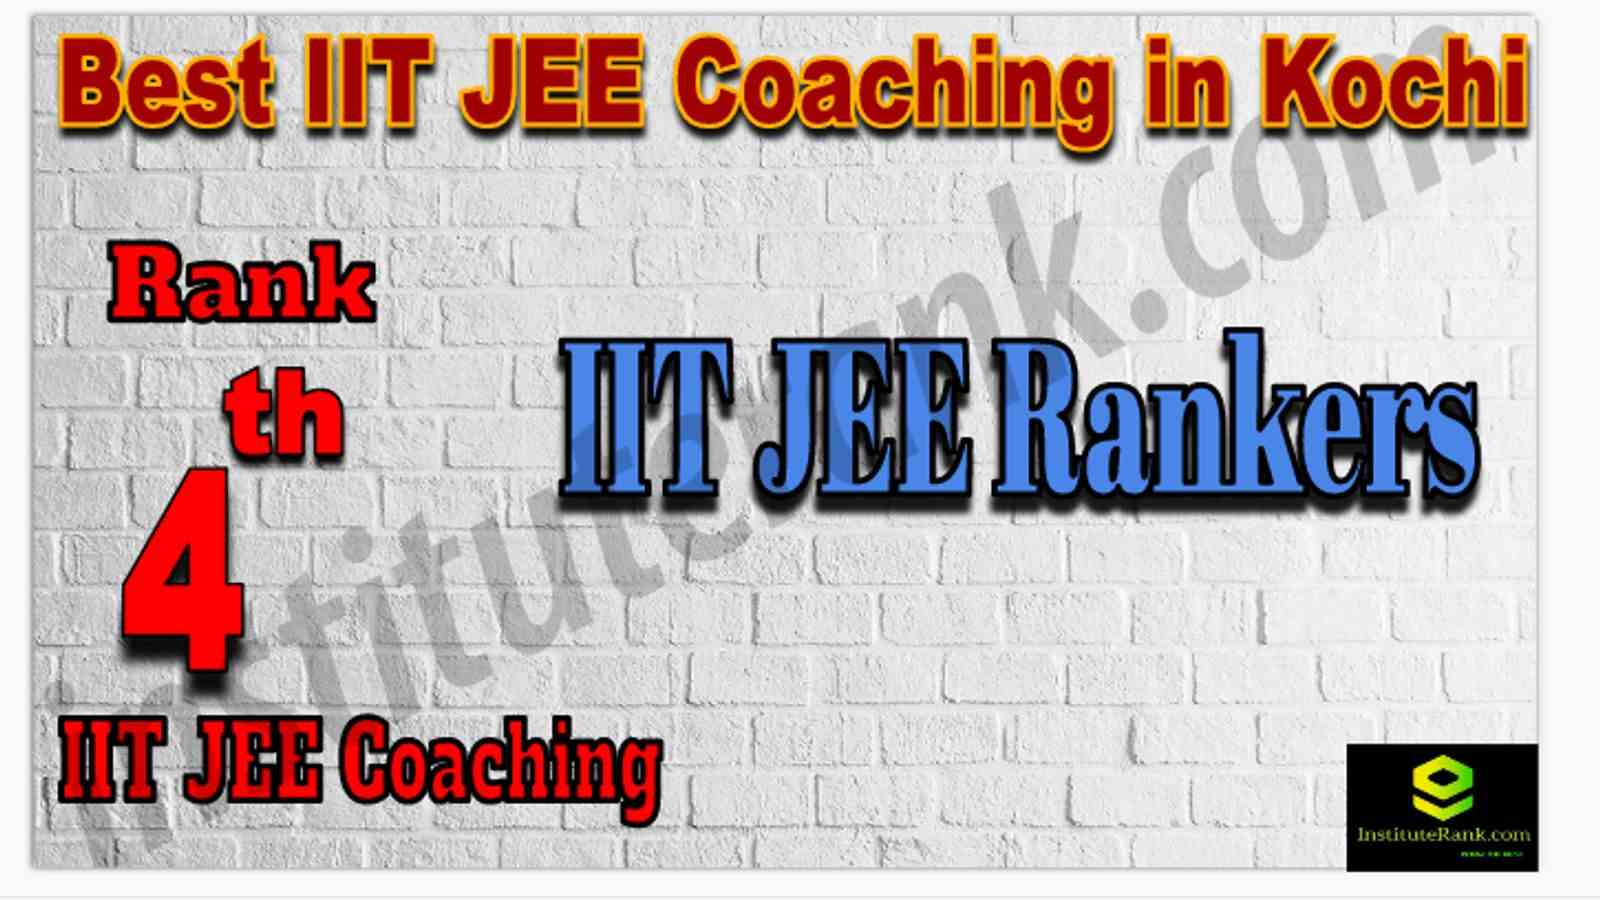 Rank 4th Best IIT JEE Coaching in Kochi